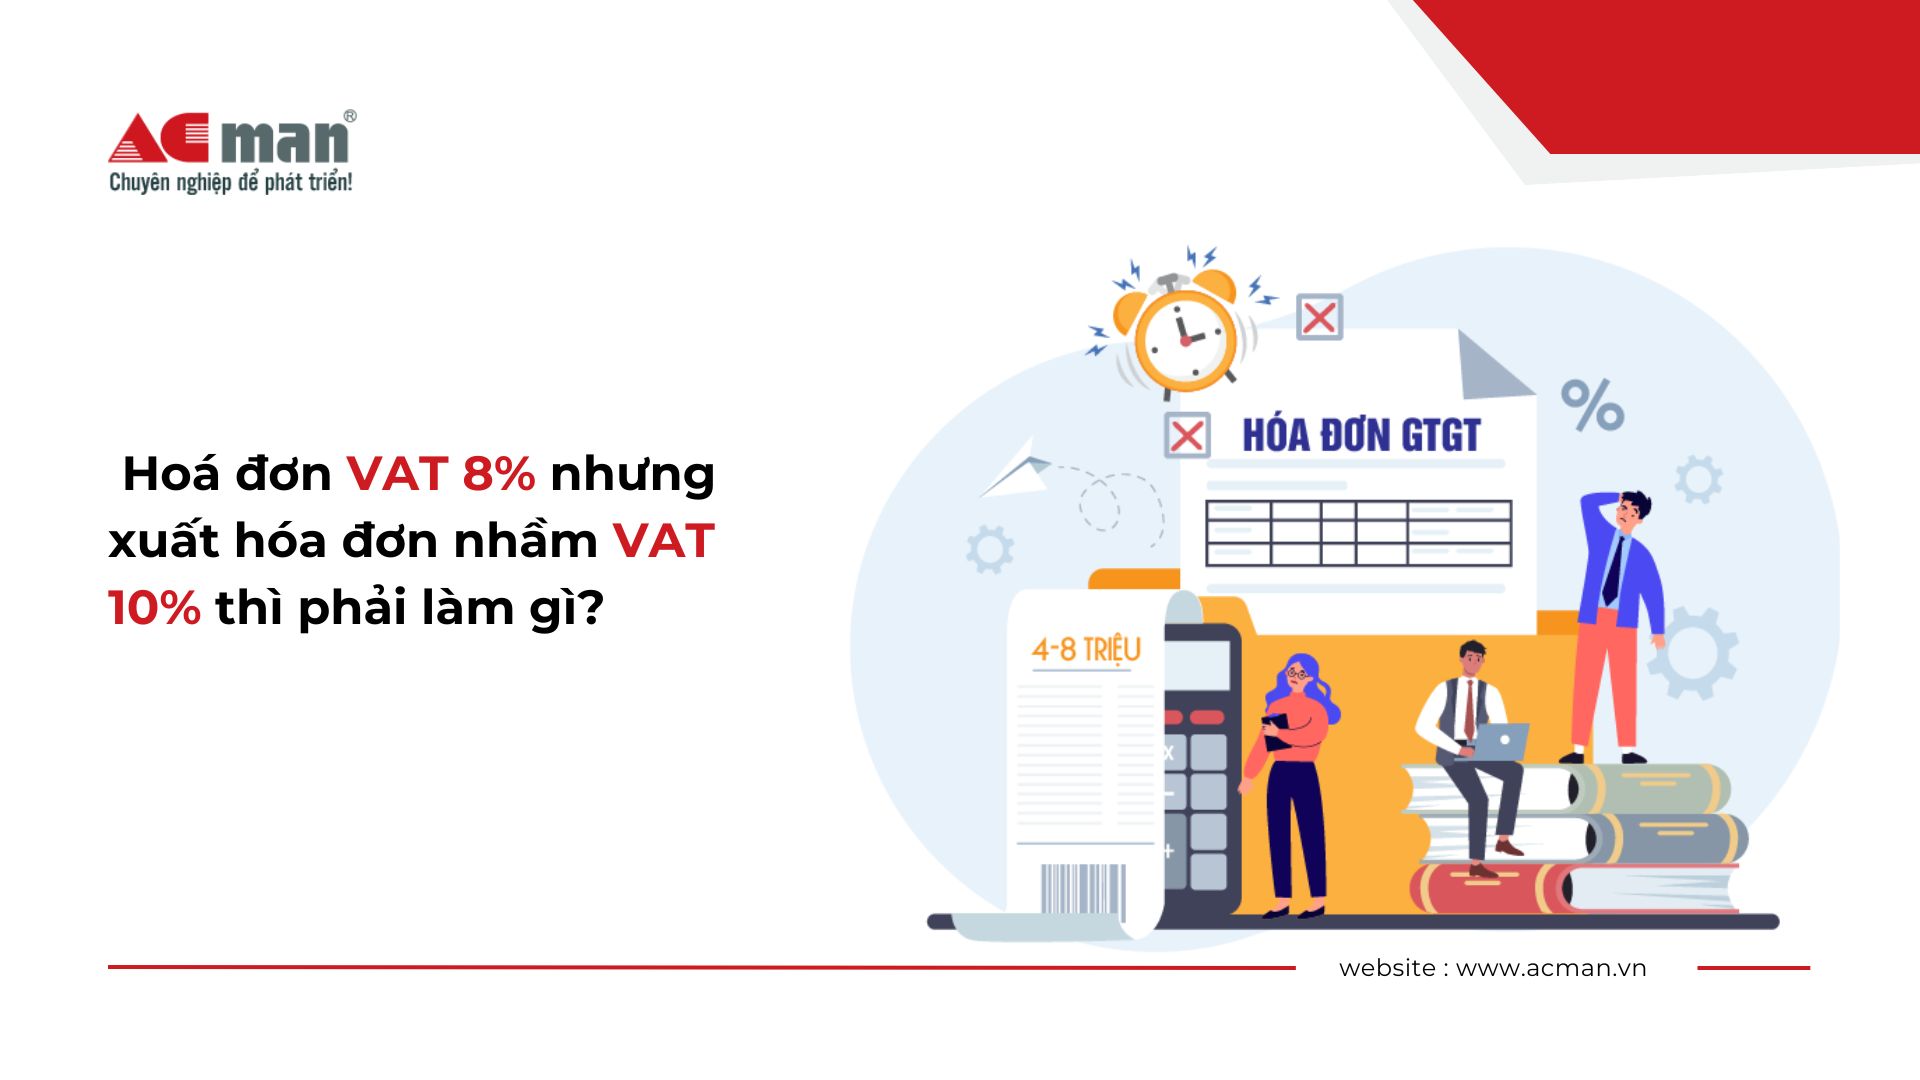 Hoá đơn VAT 8% nhưng xuất hóa đơn nhầm VAT 10% thì phải làm gì?